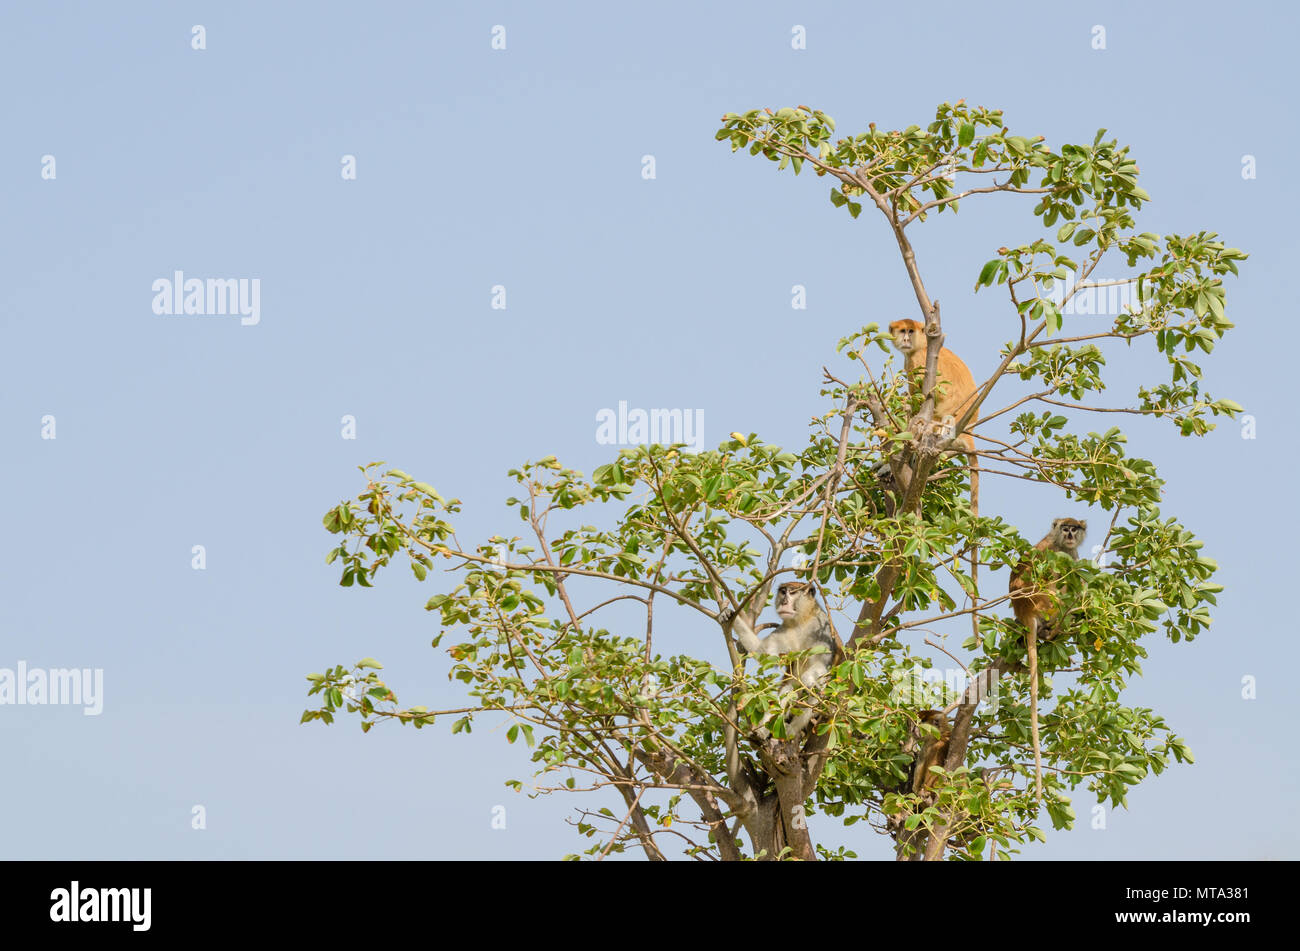 Groupe de singes sauvages mona Campbell's sitting in tree top isolés contre le ciel bleu, le Sénégal, l'Afrique Banque D'Images